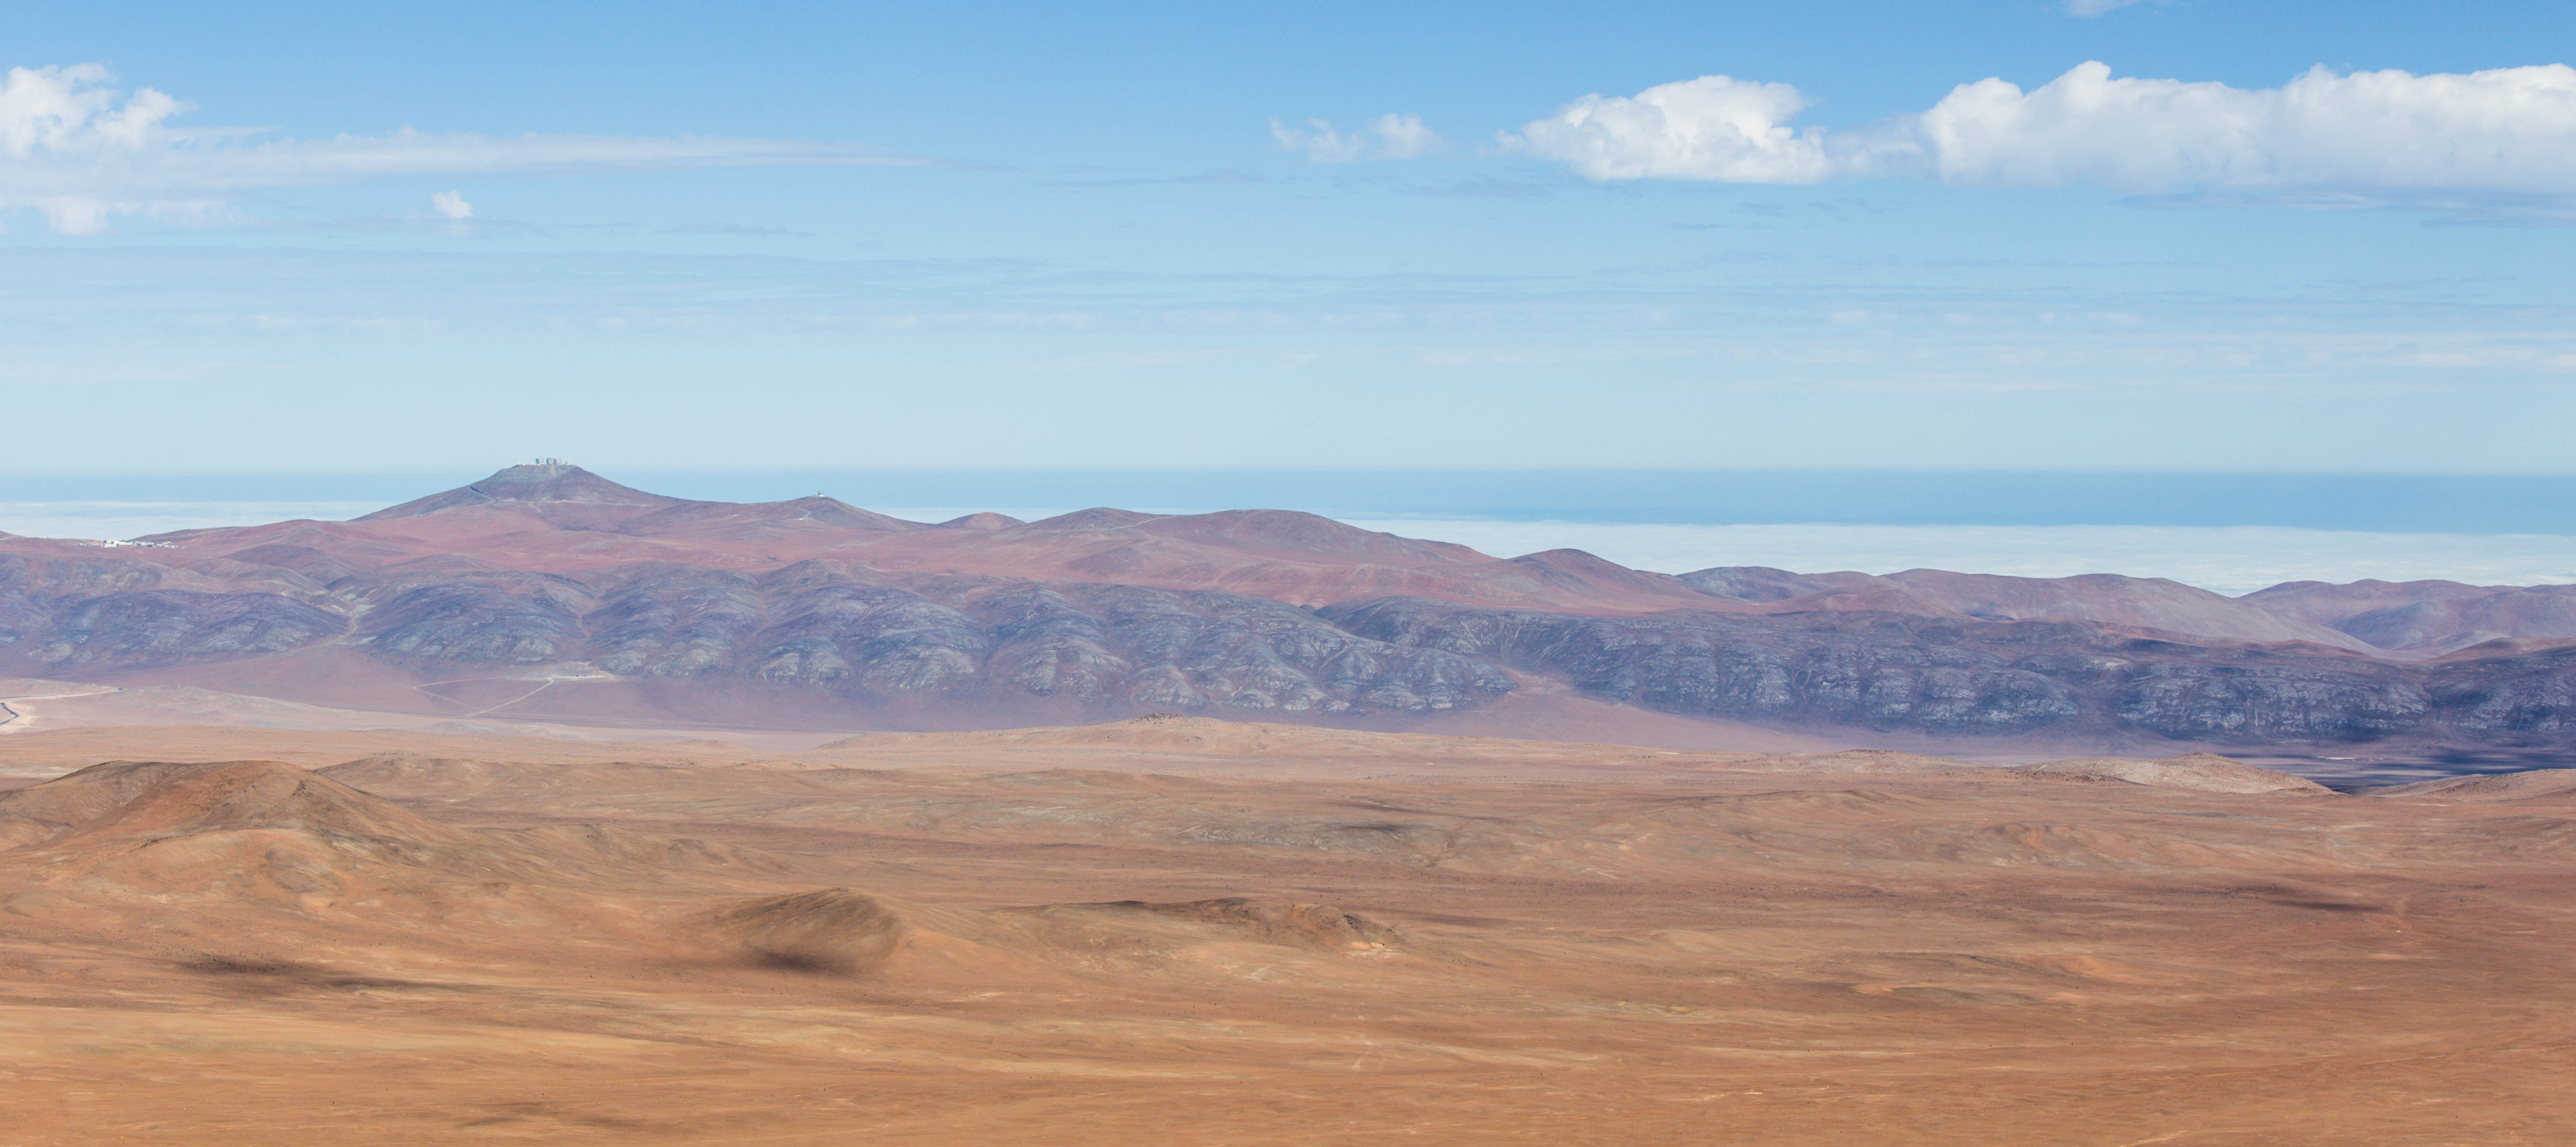 Le Cerro Paranal vu depuis le Cerro Armazones (le camp de base, la plateforme des télescopes et le télescope VISTA)